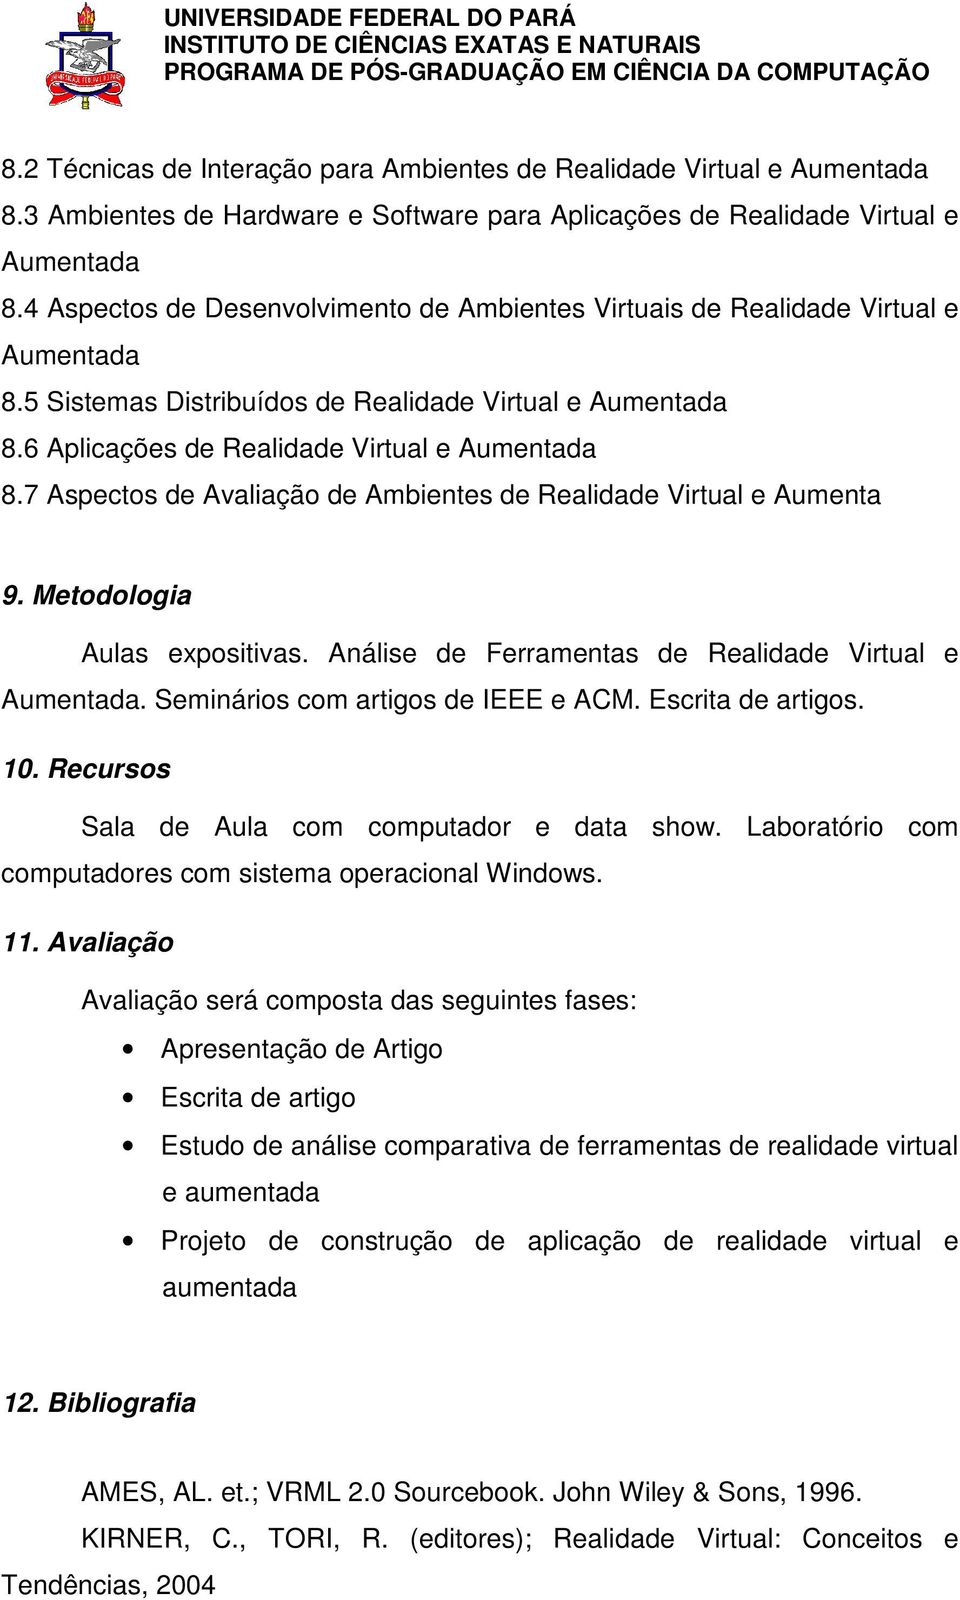 7 Aspectos de Avaliação de Ambientes de Realidade Virtual e Aumenta 9. Metodologia Aulas expositivas. Análise de Ferramentas de Realidade Virtual e Aumentada. Seminários com artigos de IEEE e ACM.